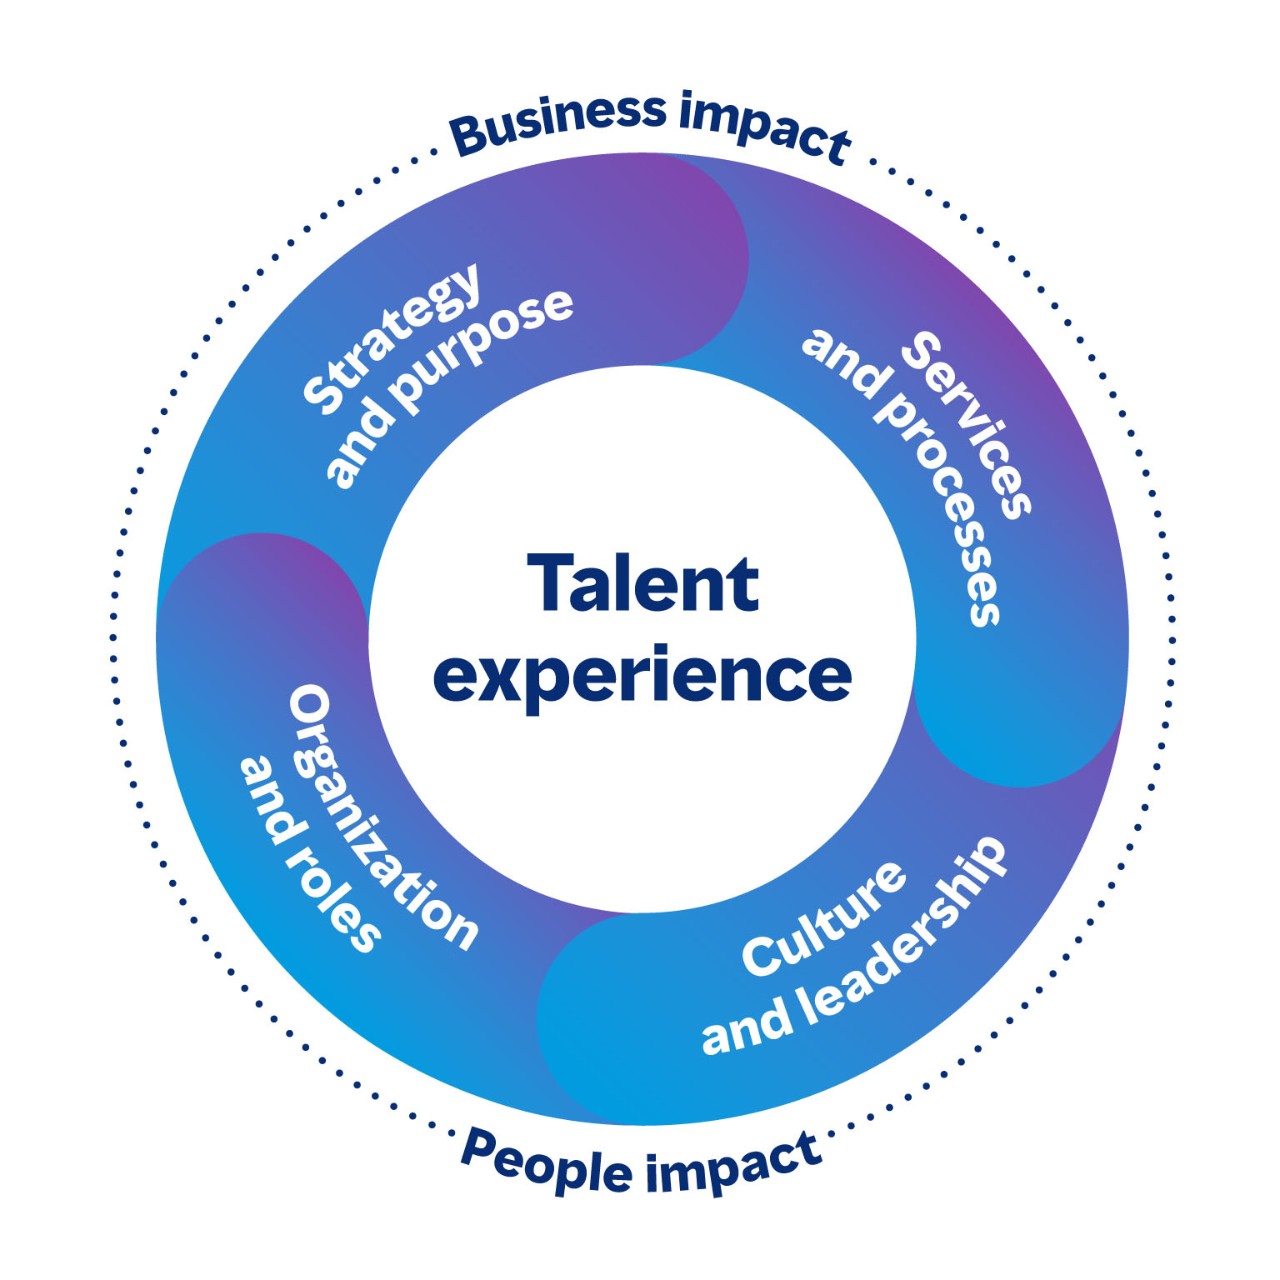 Imagem circular que mostra as áreas da experiência de gestão de talento ligadas entre si com impacto no negócio e nas pessoas. As quatro áreas são Estratégia e propósito, Serviços e processos, Cultura e liderança, Organização e funções.